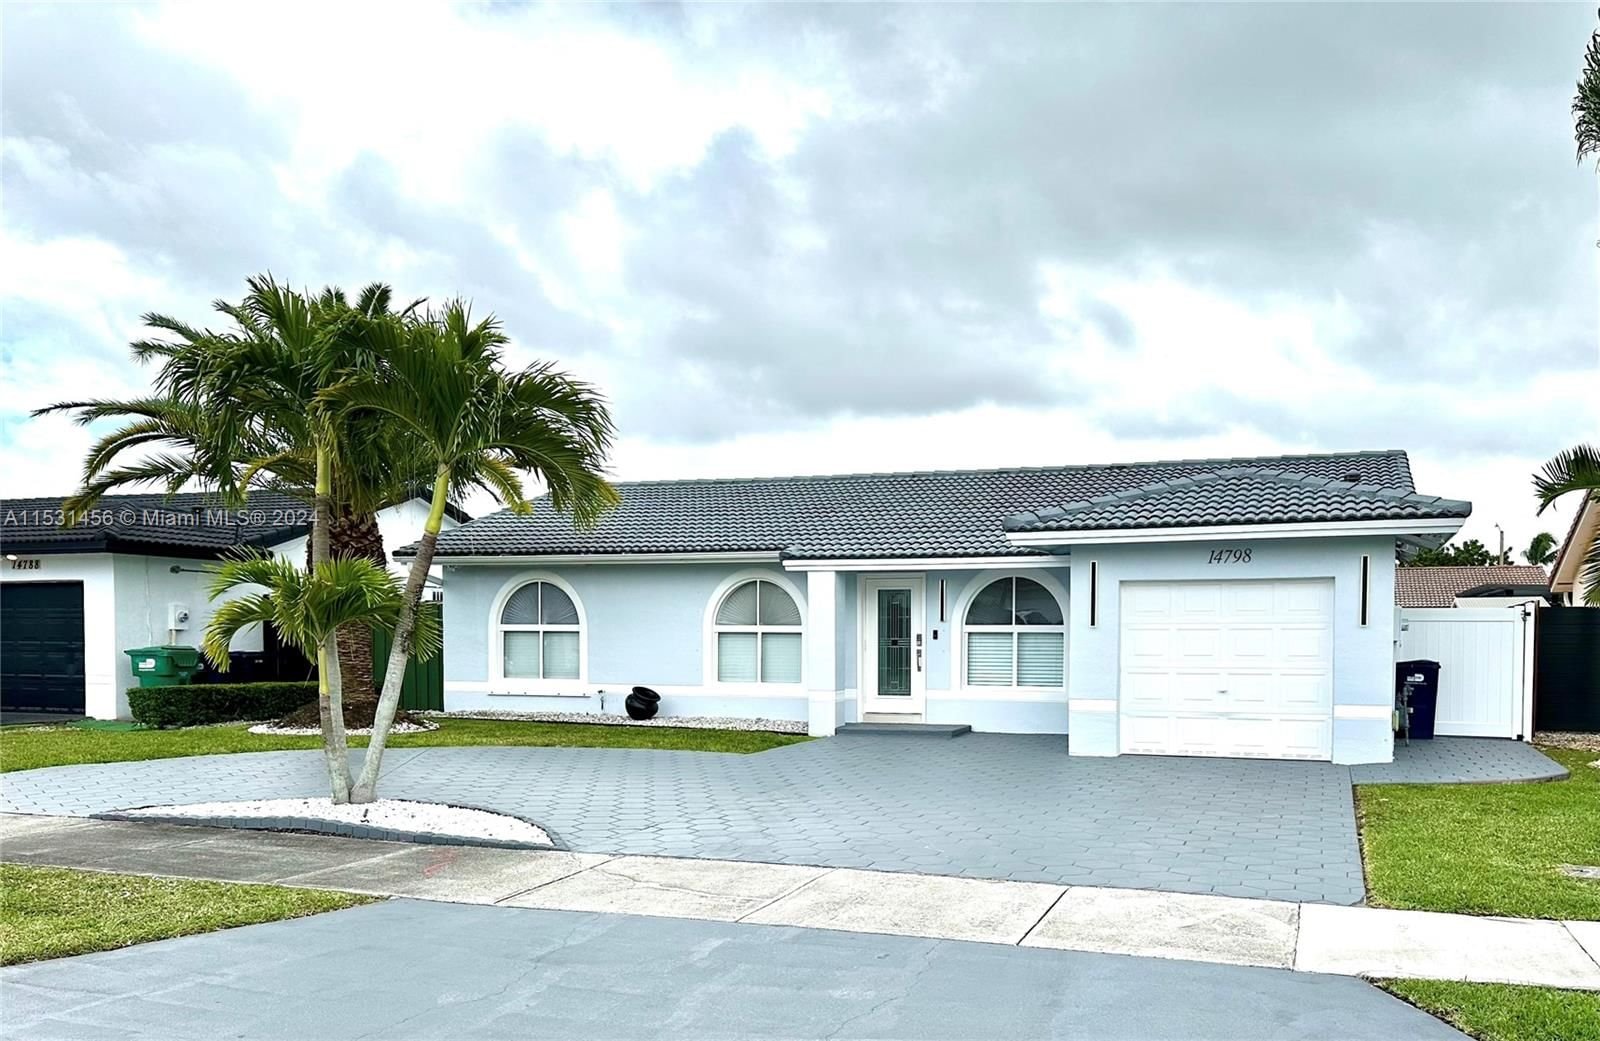 Real estate property located at 14798 175th St, Miami-Dade County, LUZ ESTELA SUB, Miami, FL